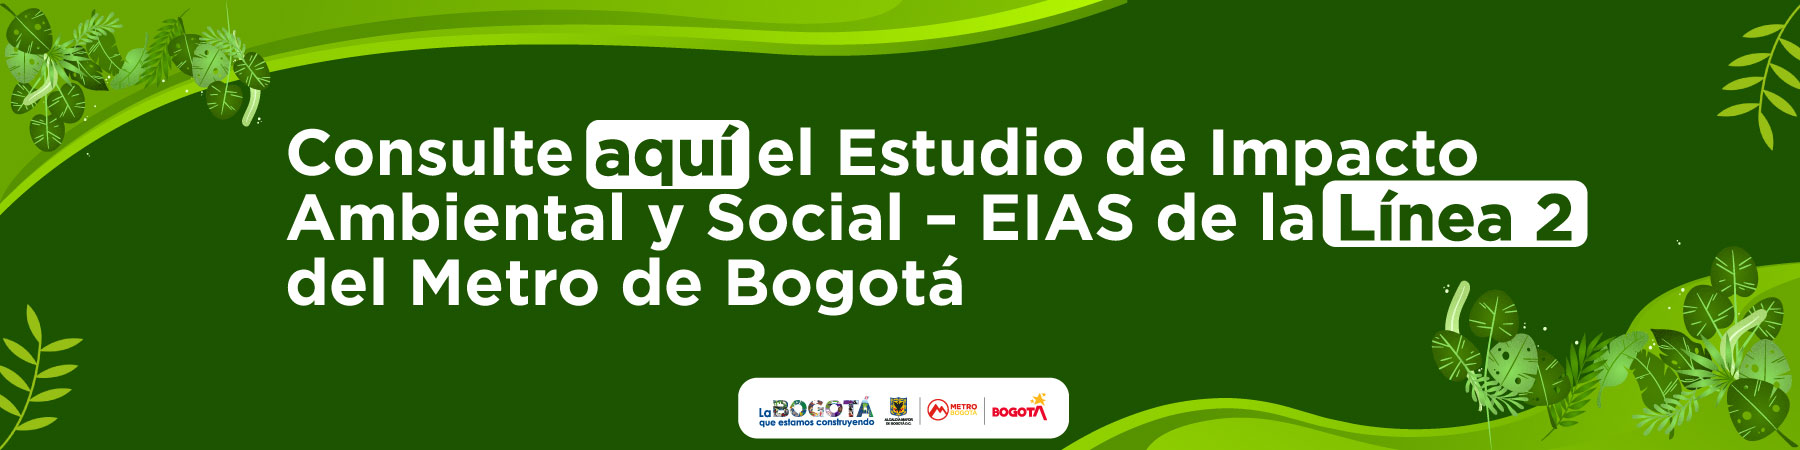 Consulte aquí el Estudio de Impacto Ambiental y Social (EIAS) de la Línea 2 del Metro de Bogotá